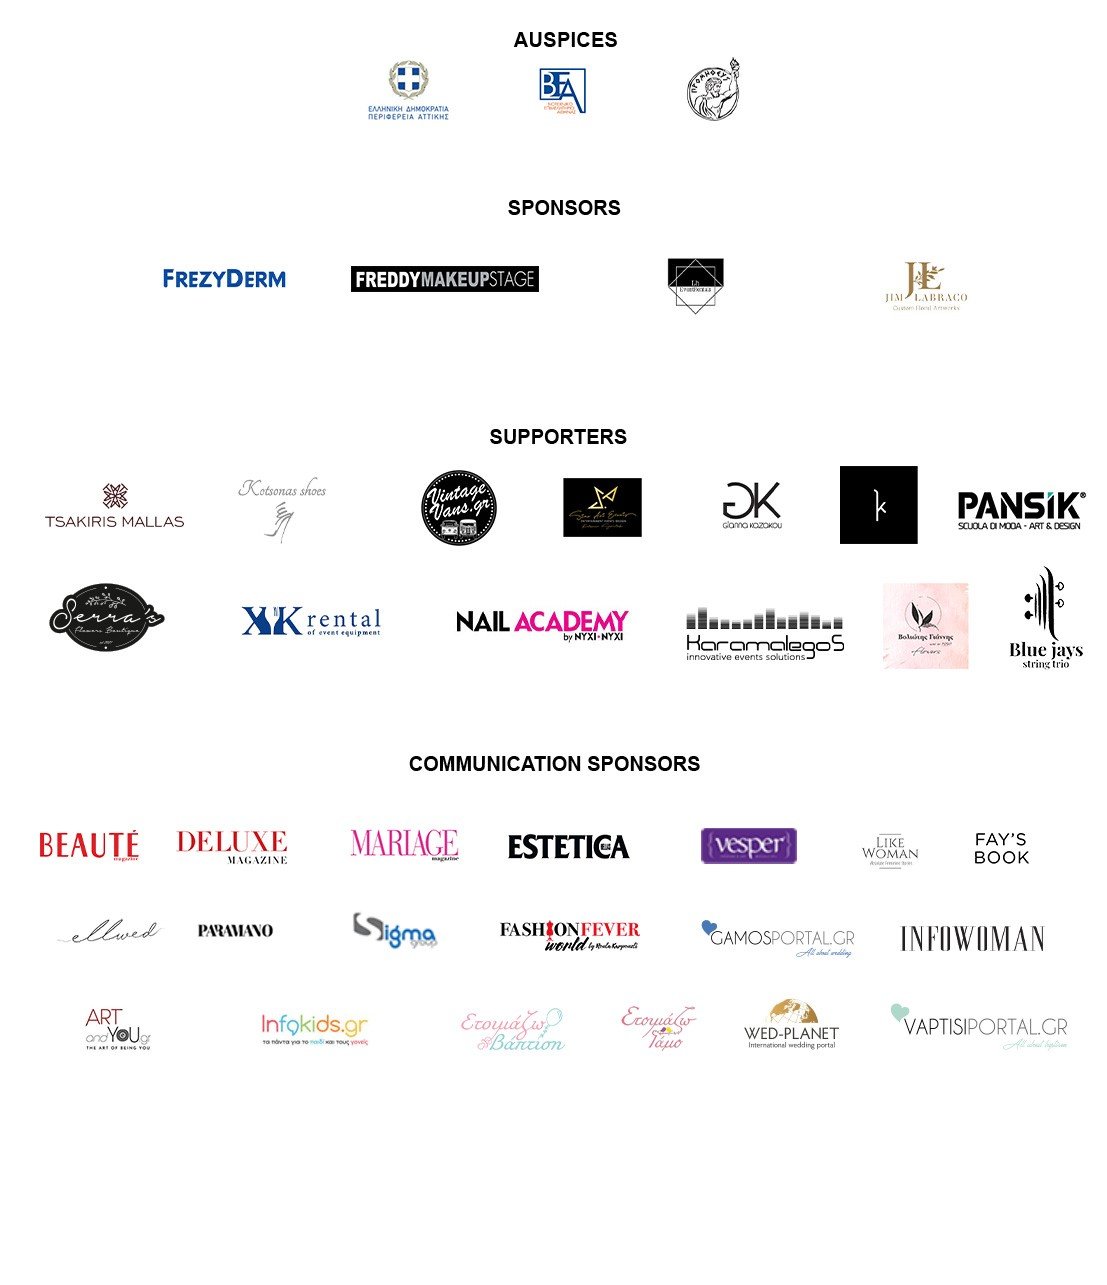 Bridal Expo & Bridal Fashion Week List of Sponsors 